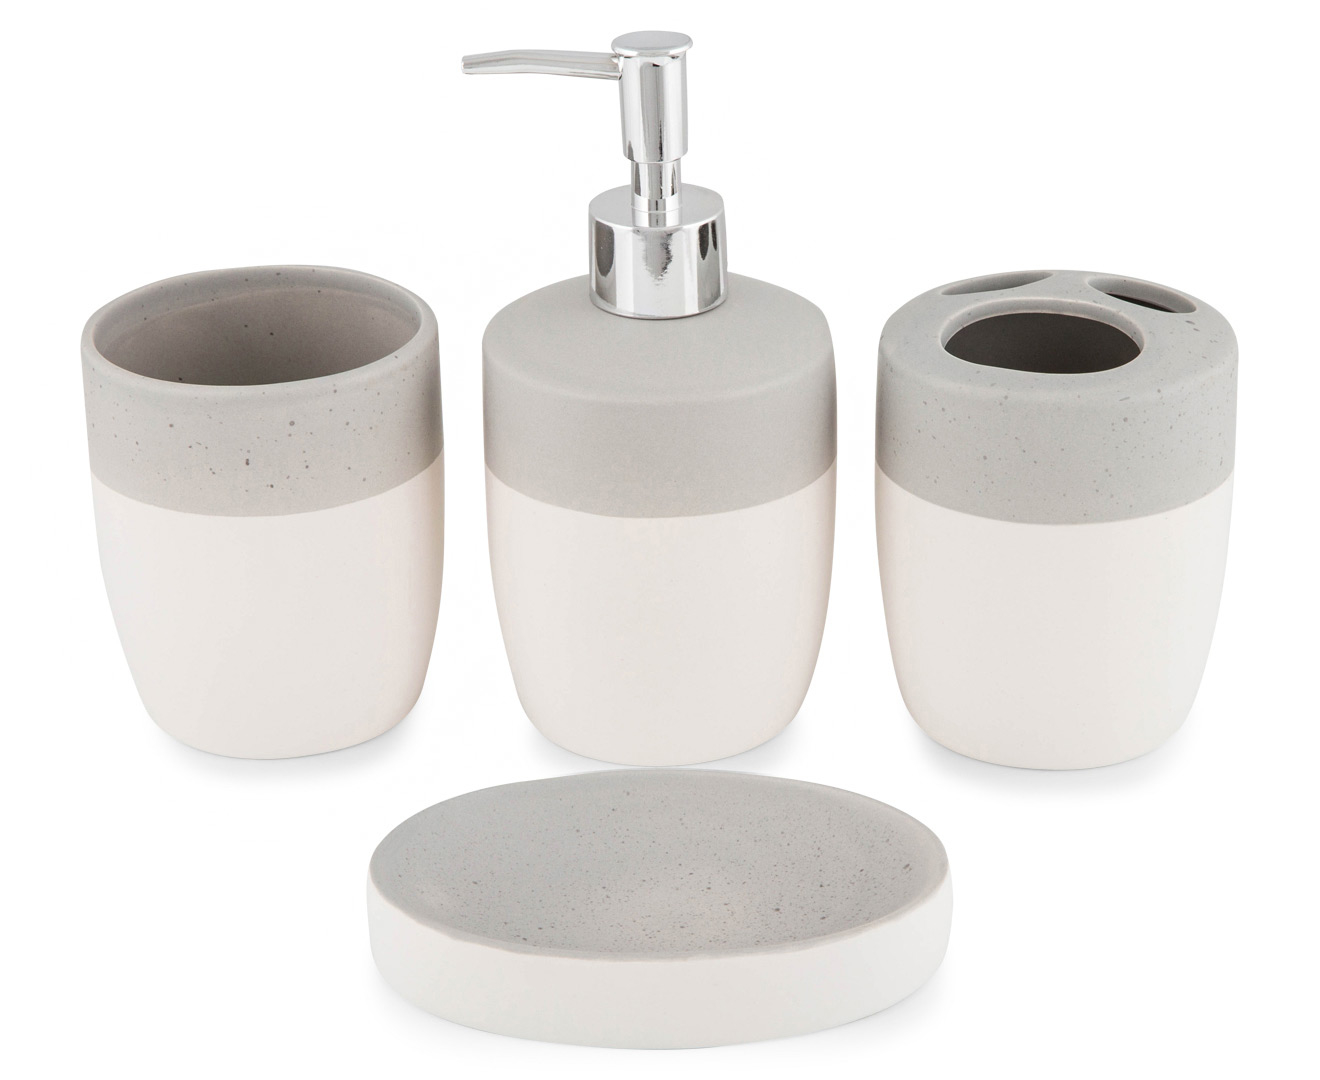 Cooper & Co. Bathroom Accessories 4-Pack - White/Concrete